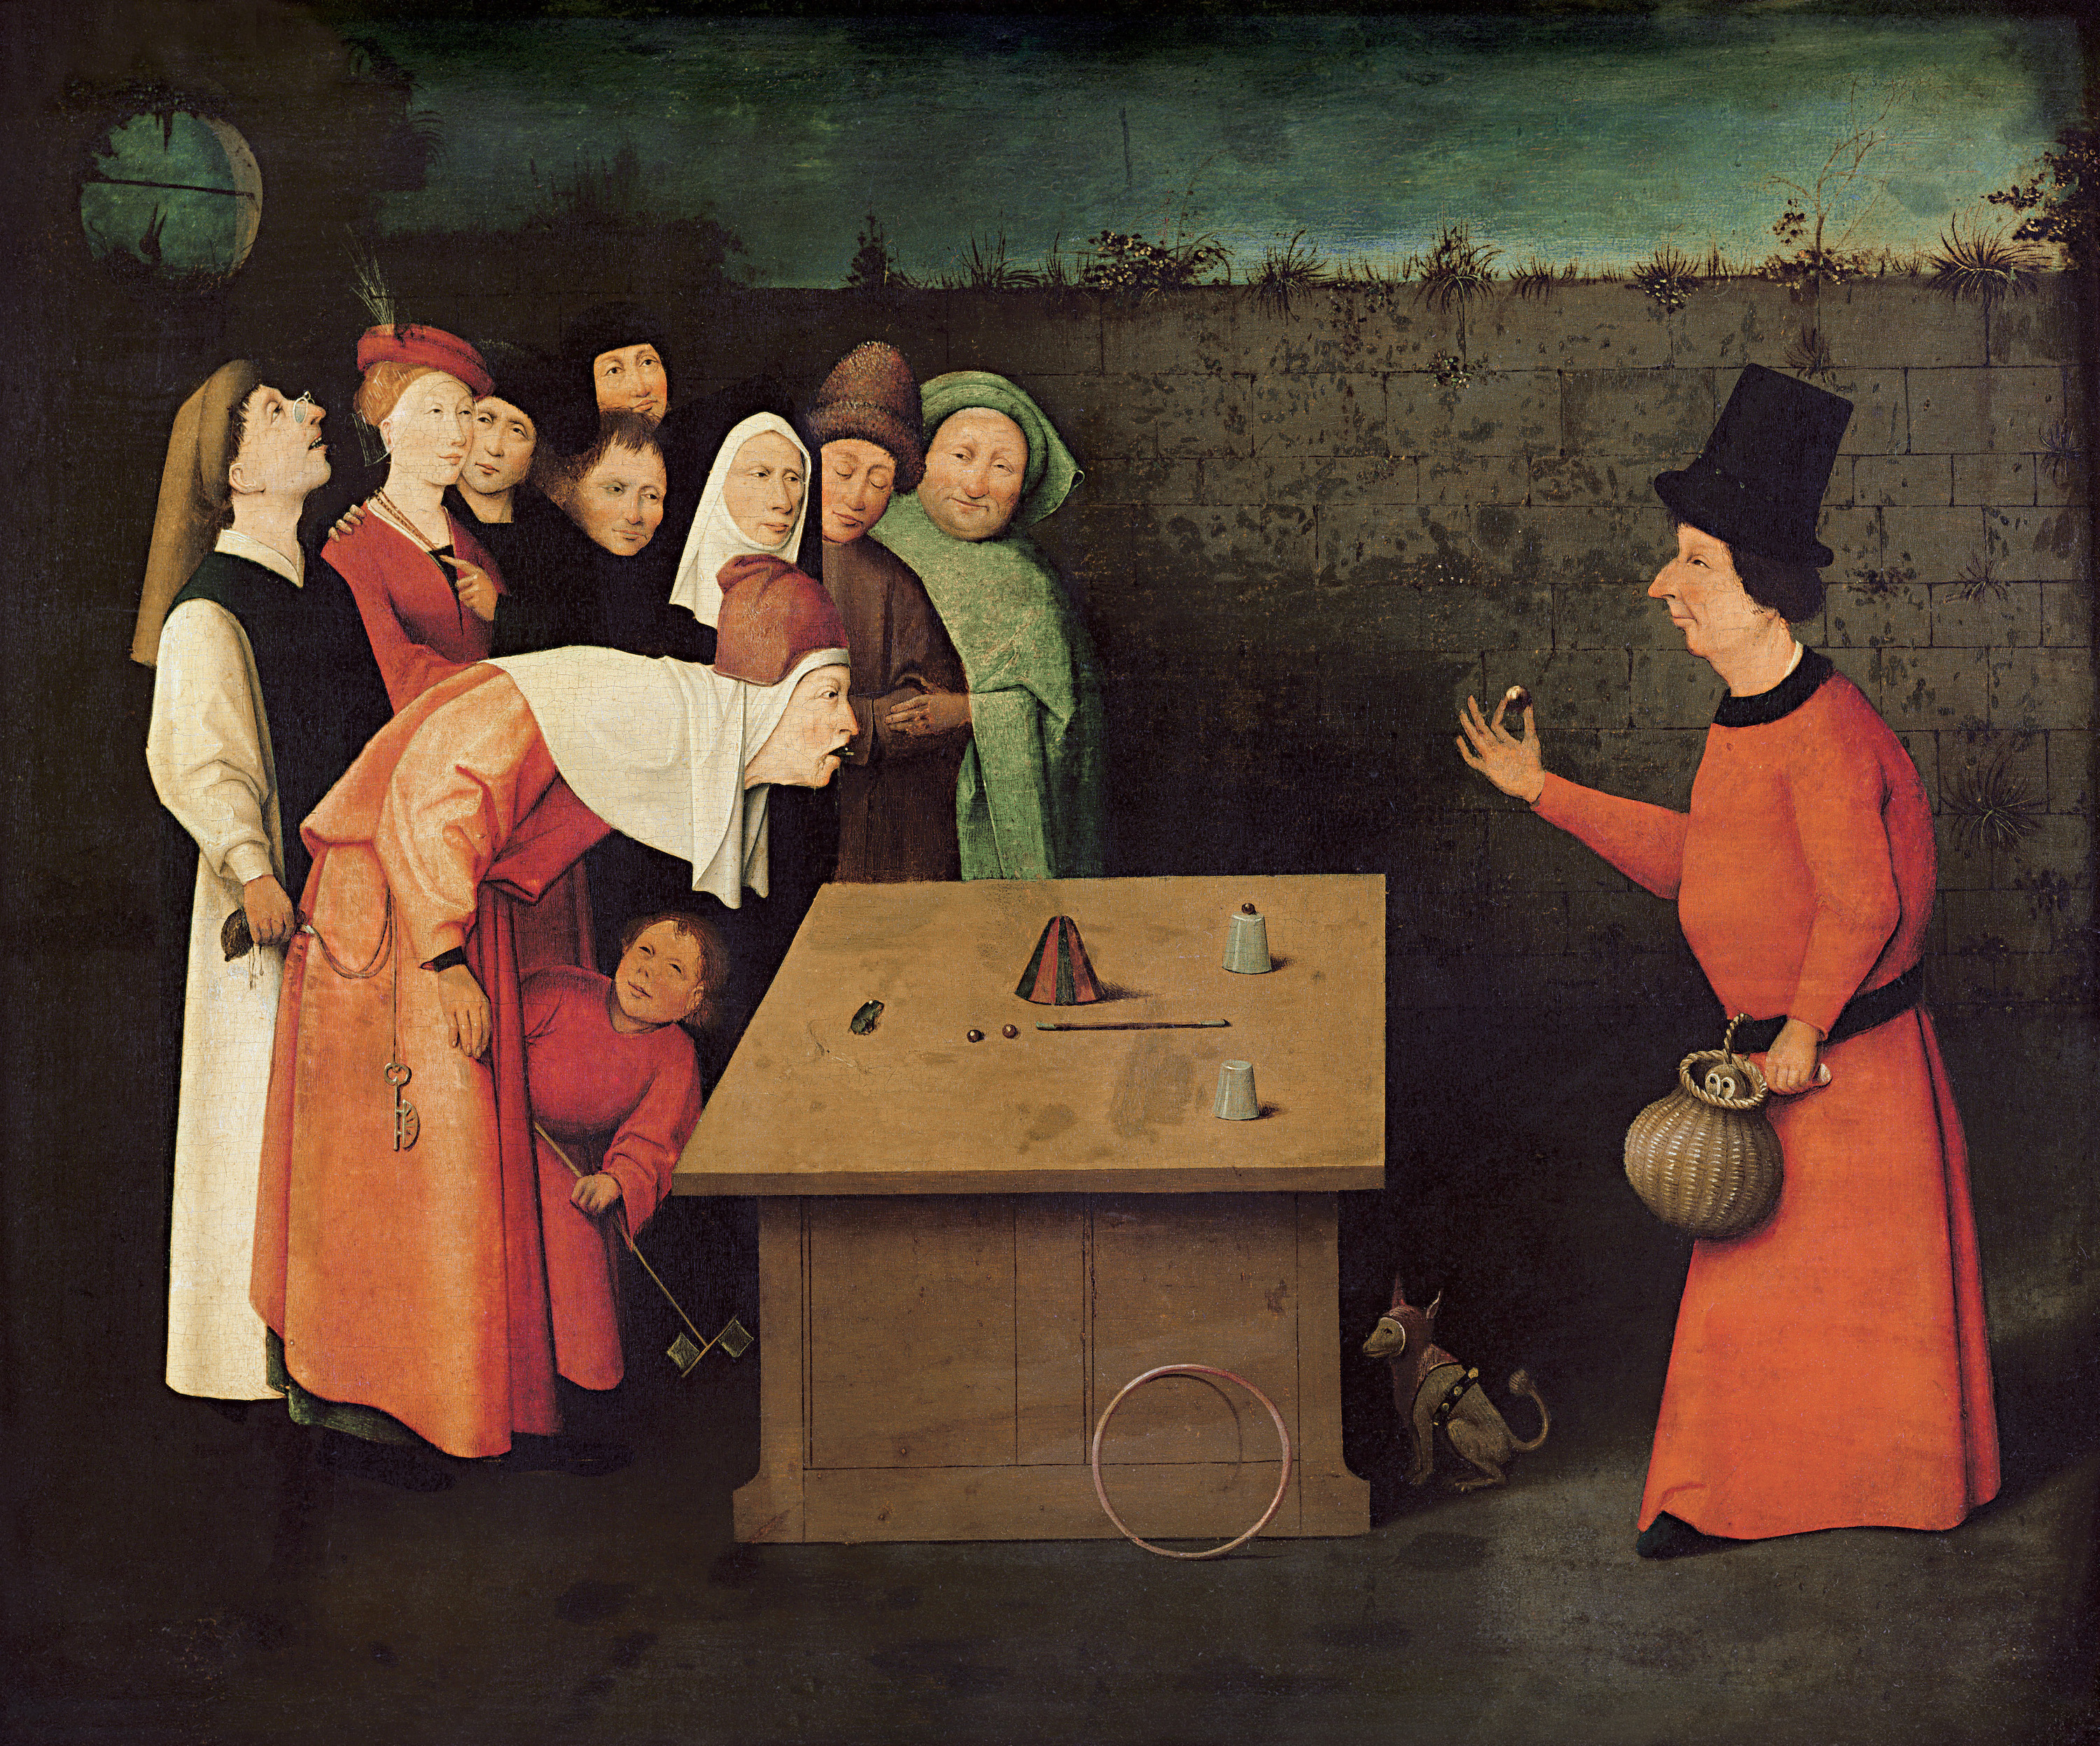 A Bűvész by Hieronymus Bosch - 1496 és 1516 között - 53 x 65 cm 